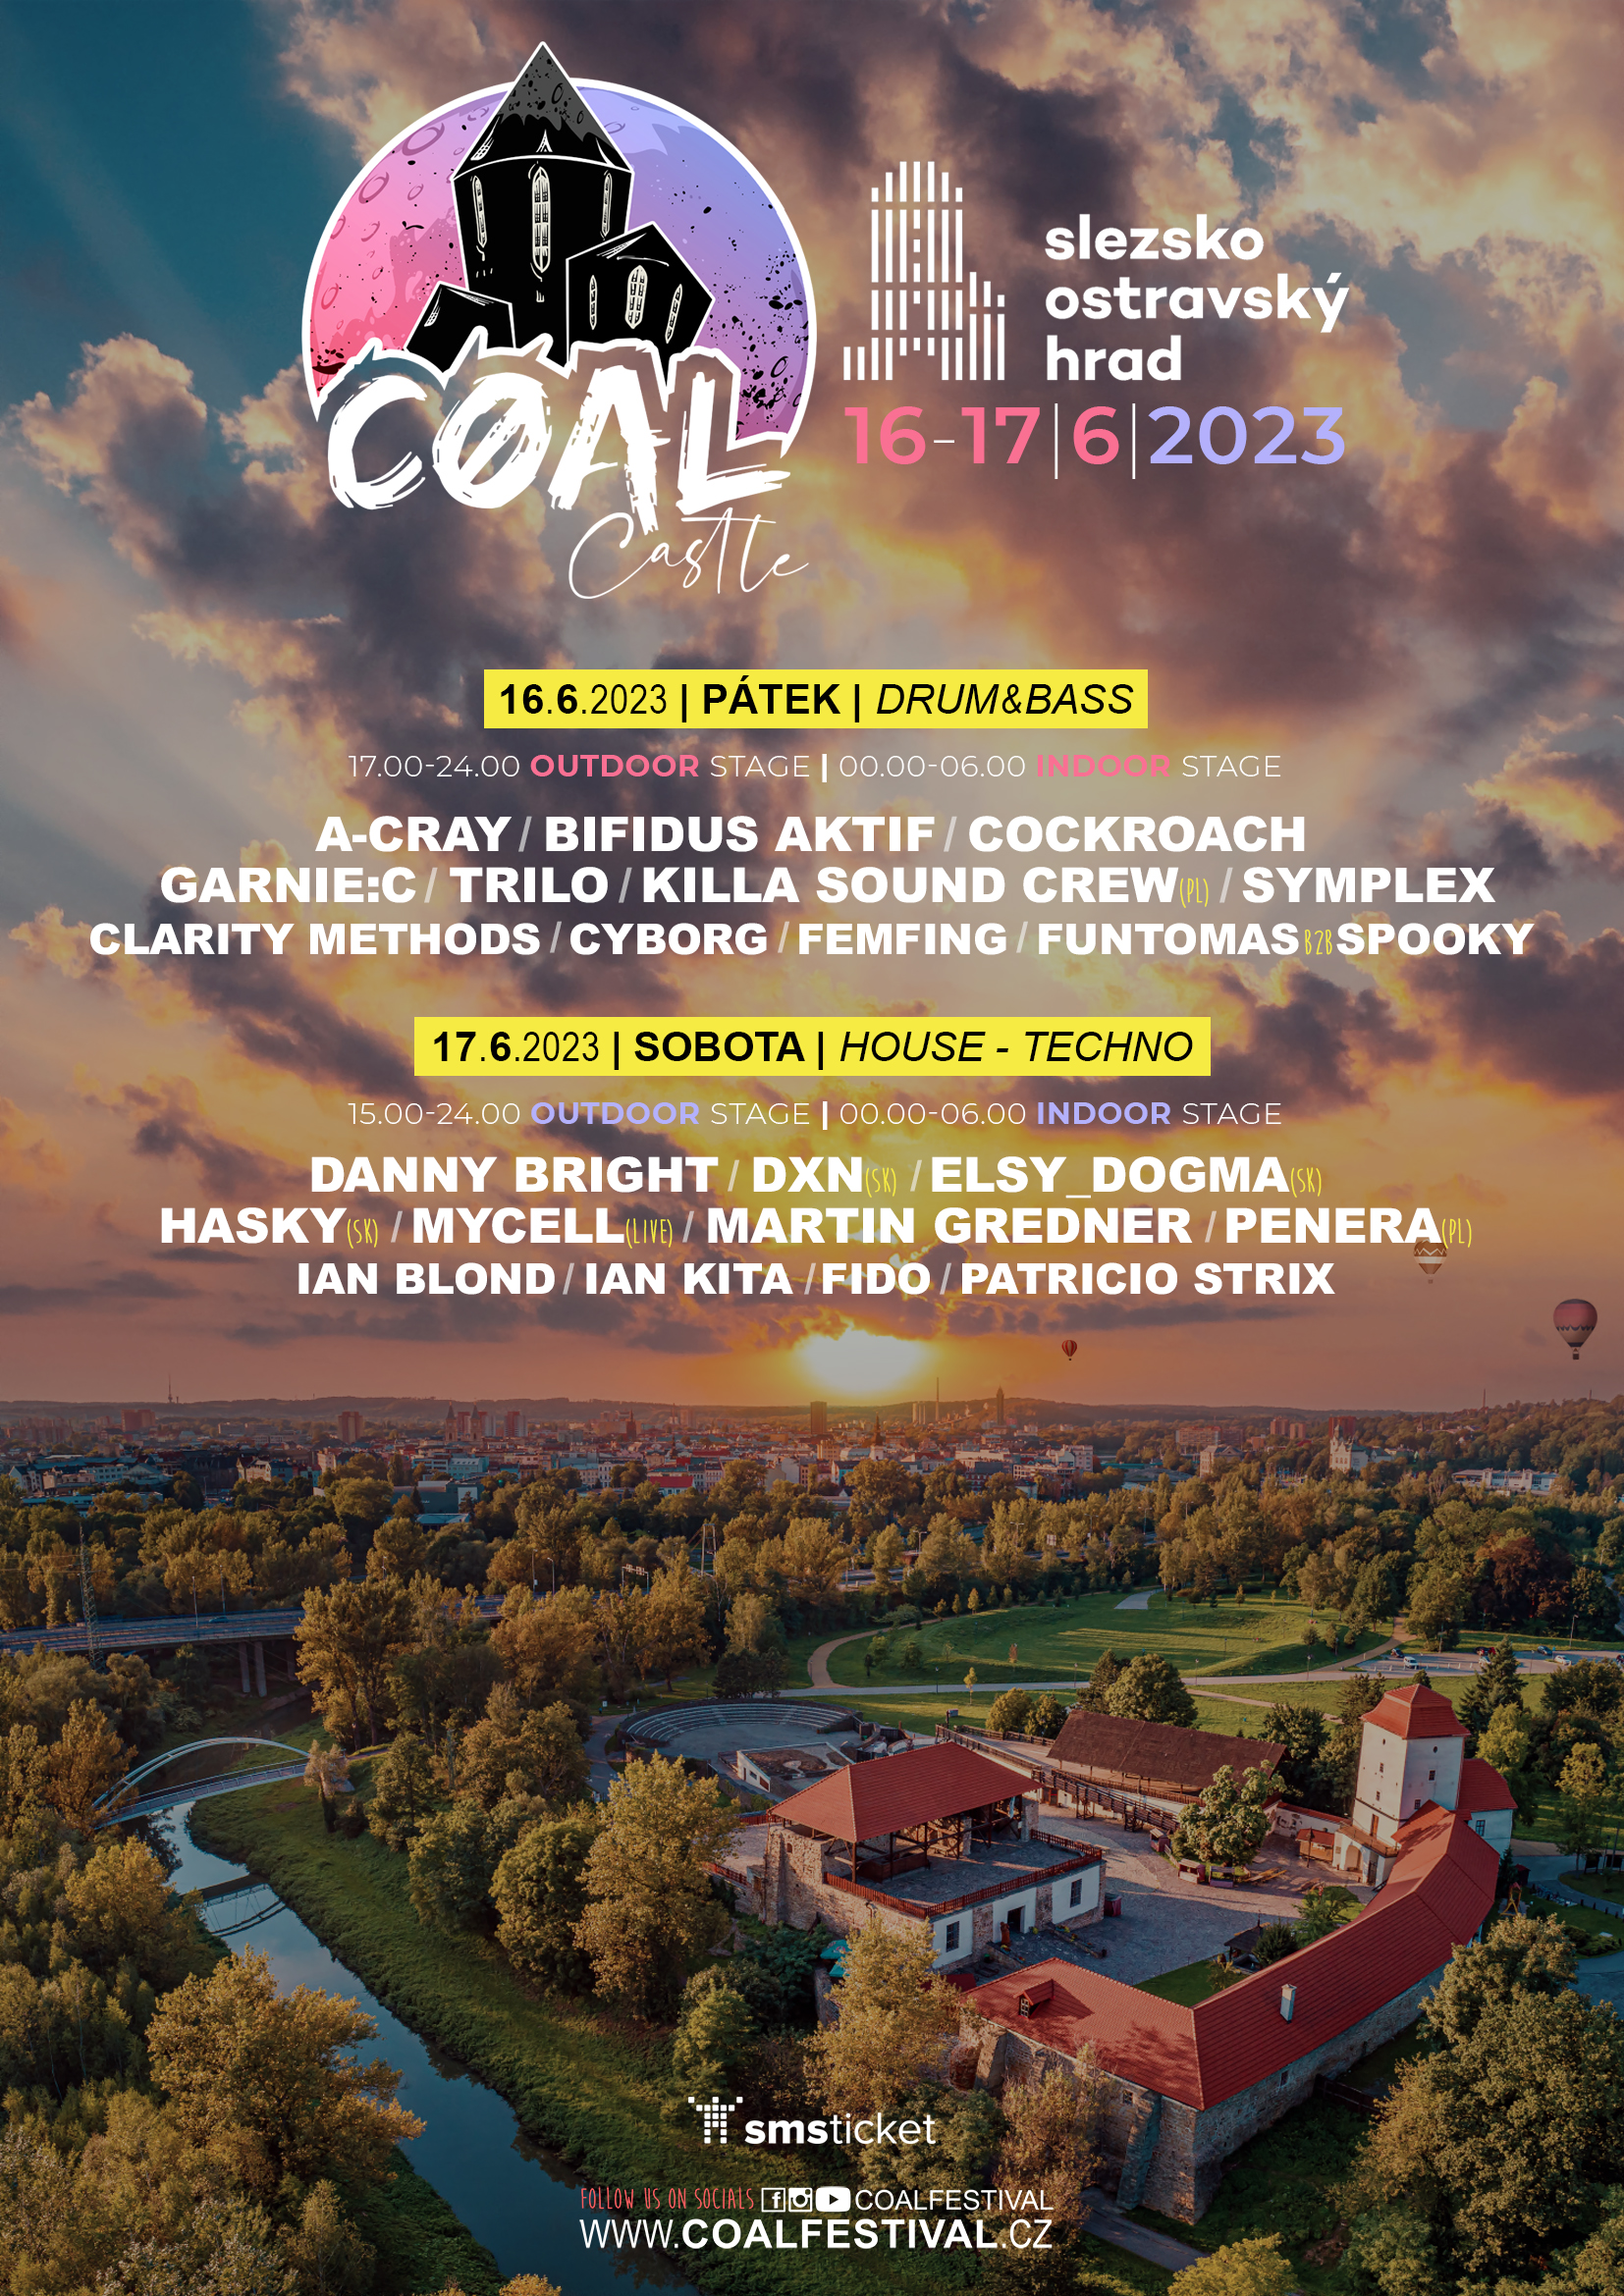 COAL Castle 2023 | Slezskoostravský hrad